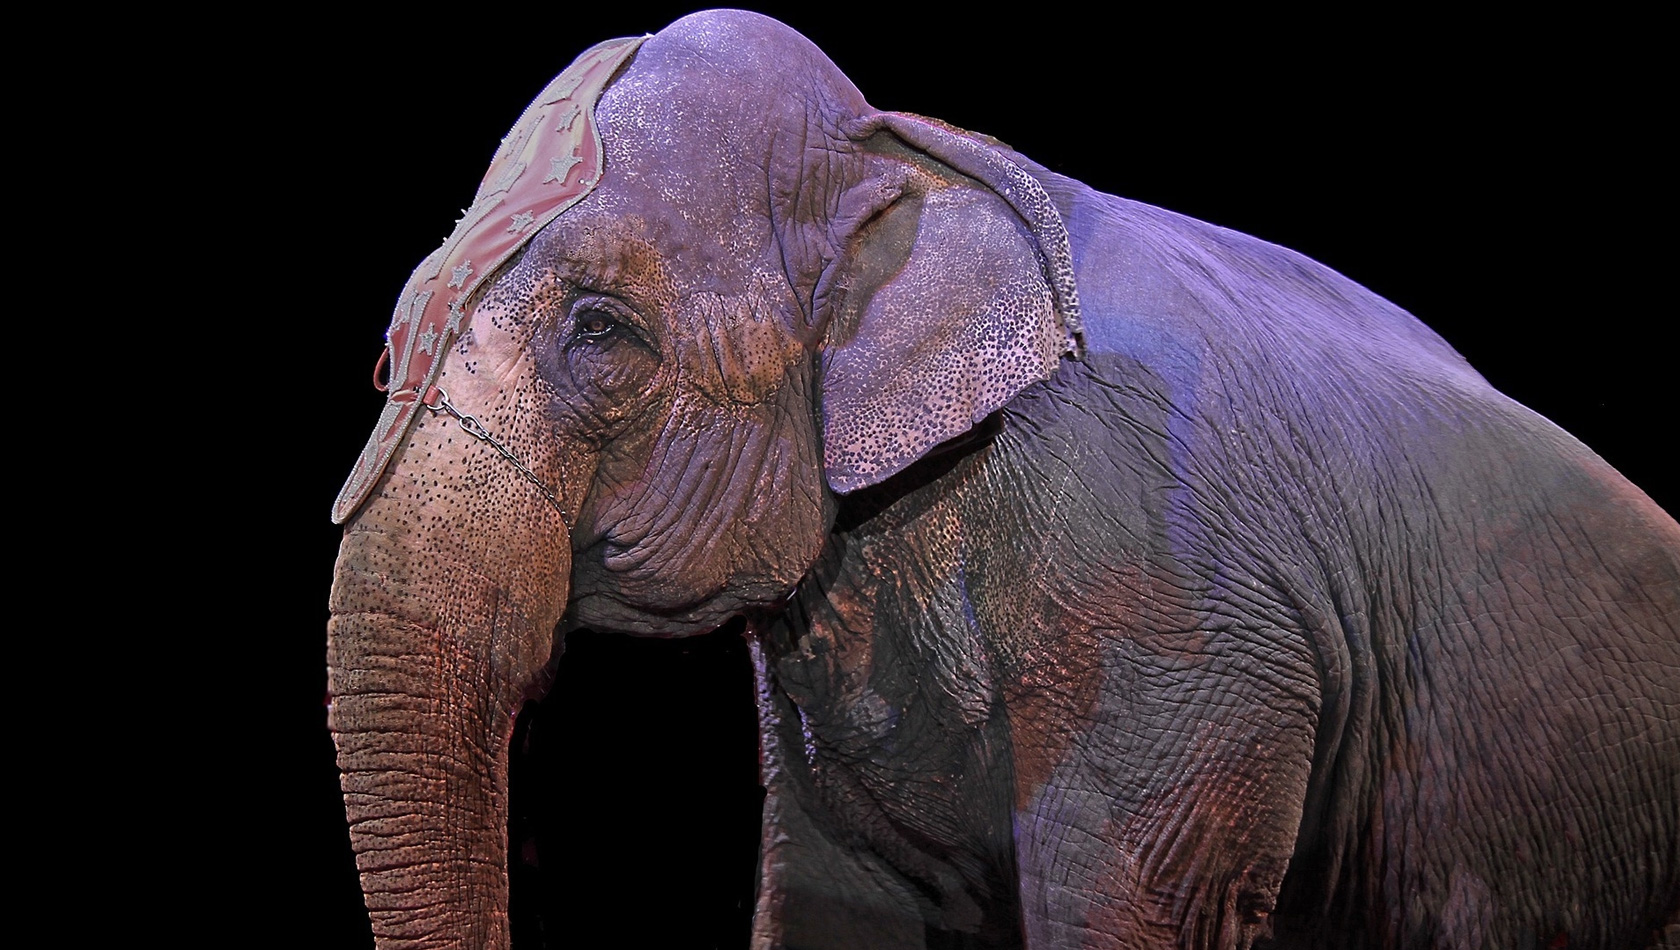 Ein Zirkuselefant, den der Safaripark Knuthenborg aufnehmen will